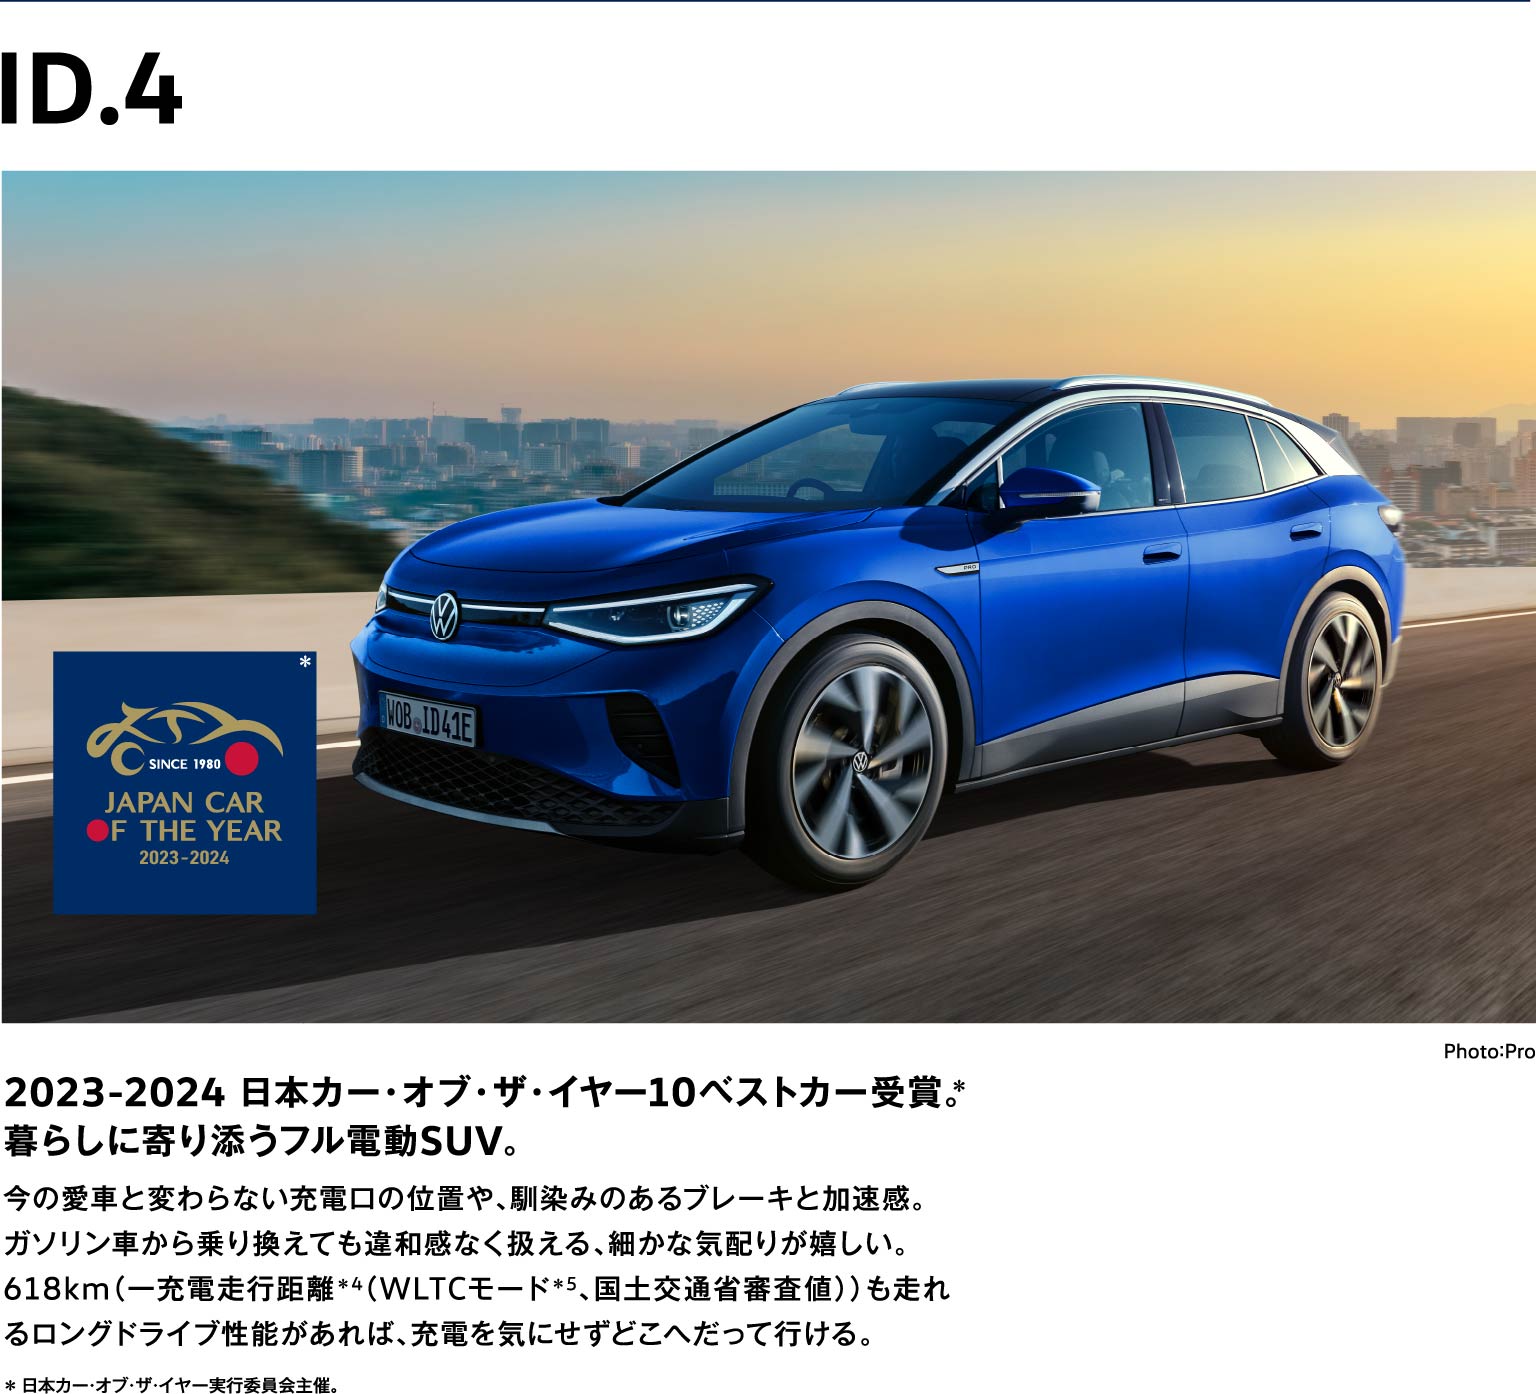 2023-2024 日本カー・オブ・ザ・イヤー10ベストカー受賞